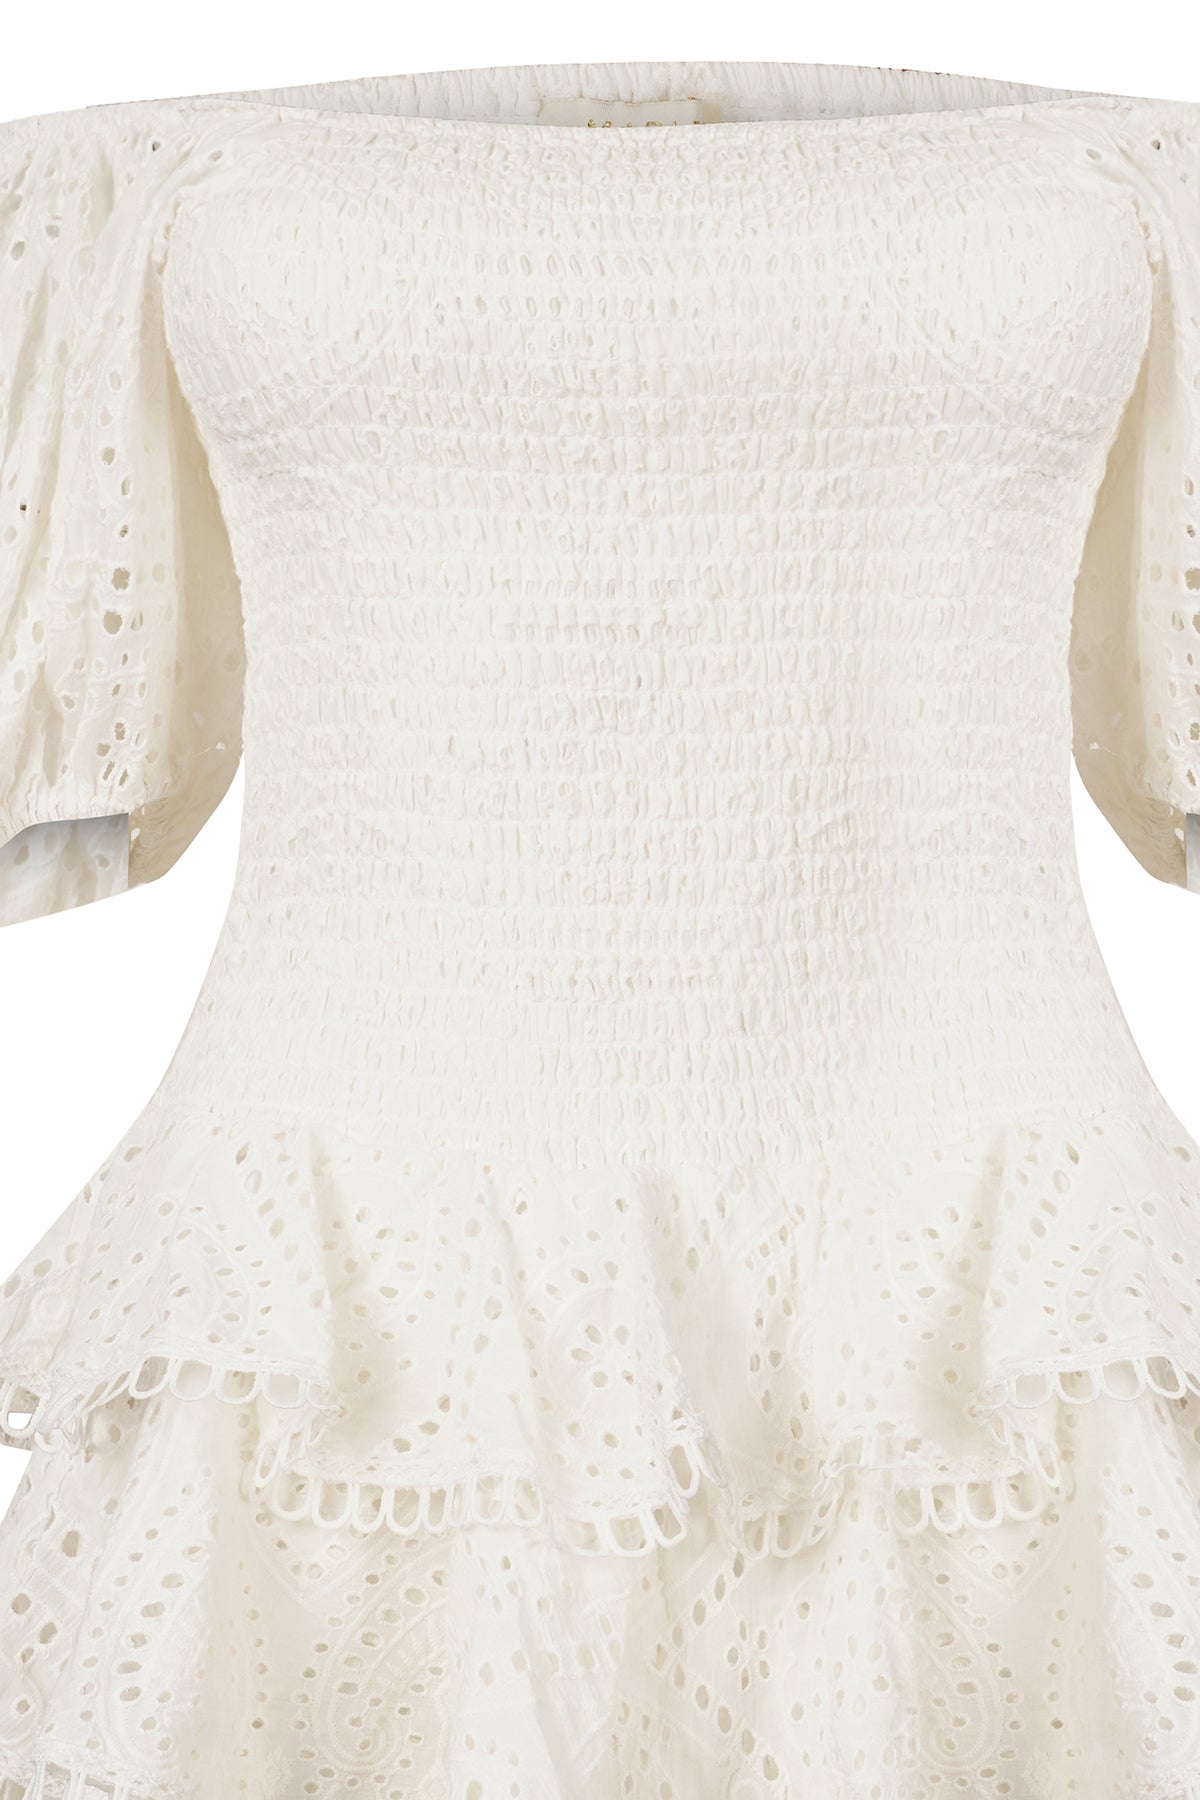 CLARA DRESS - WHITE COTTON